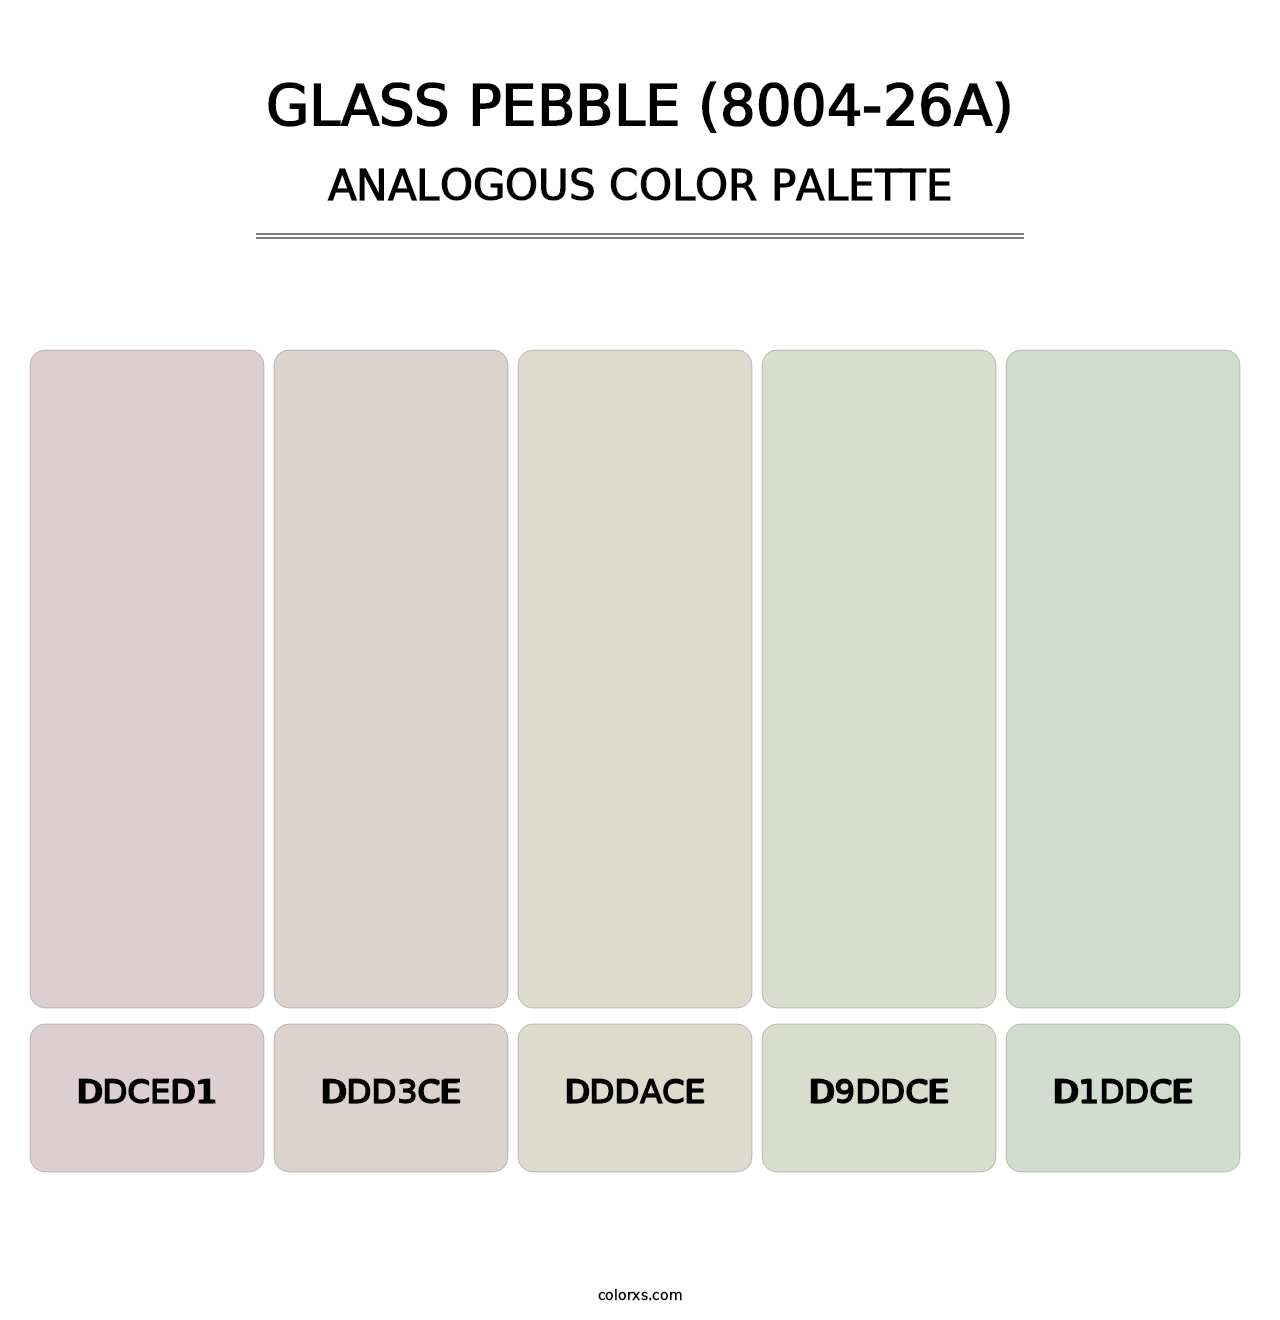 Glass Pebble (8004-26A) - Analogous Color Palette